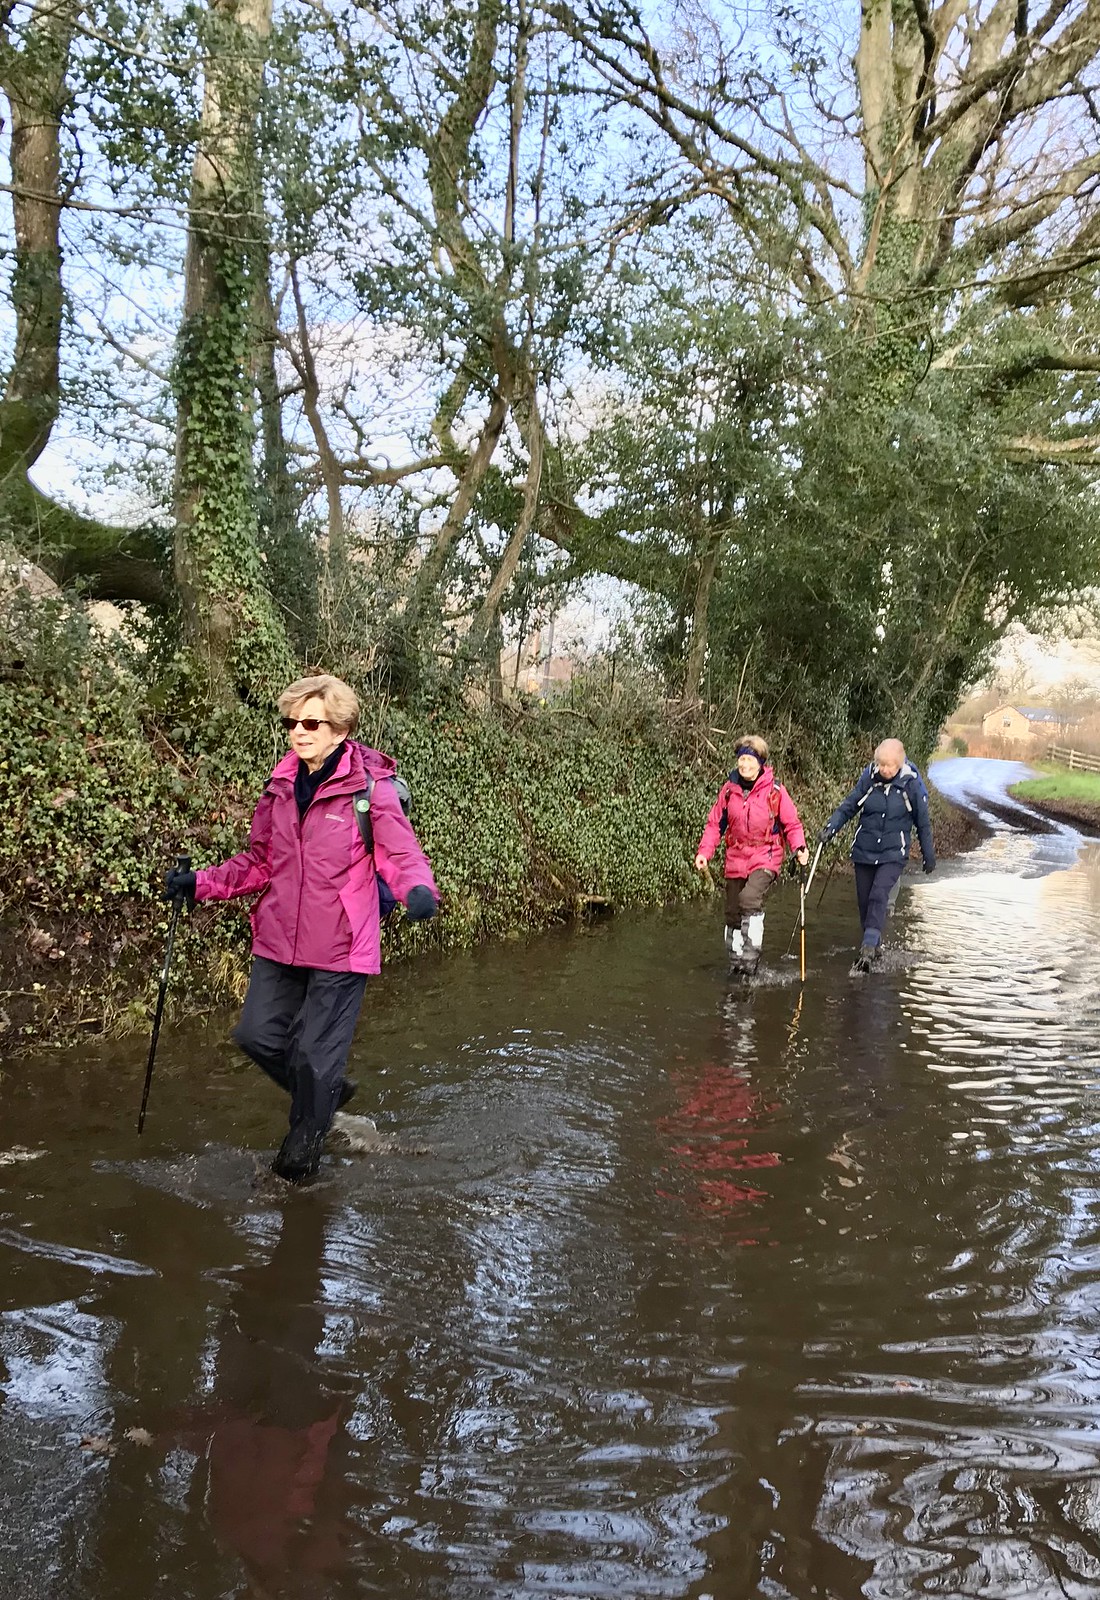 South Devon Ramblers walk on water….